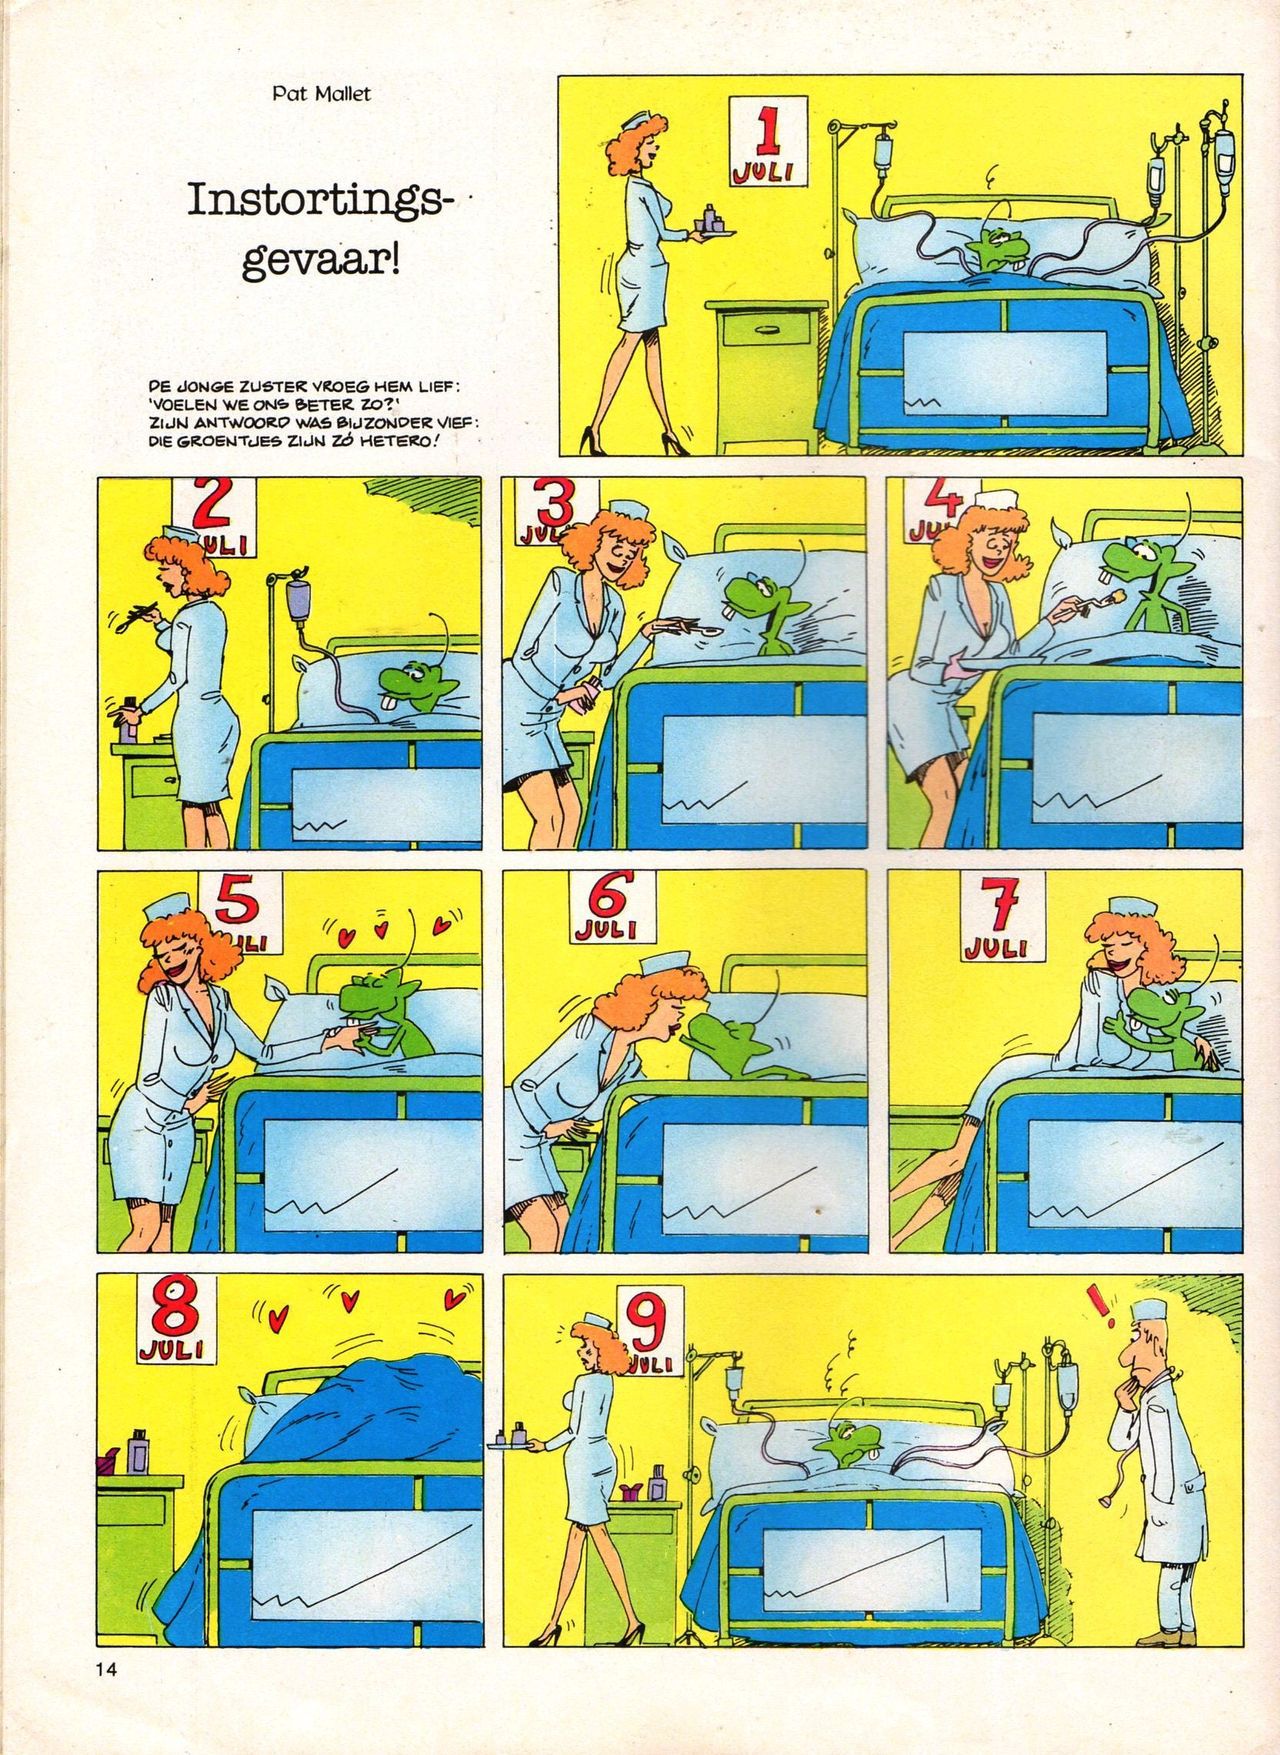 Het Is Groen En Het.. - 04 - Mag Ik Die Ballen.. OH, PARDON! (Dutch) Een oude humoristische serie van Pat Mallet 14